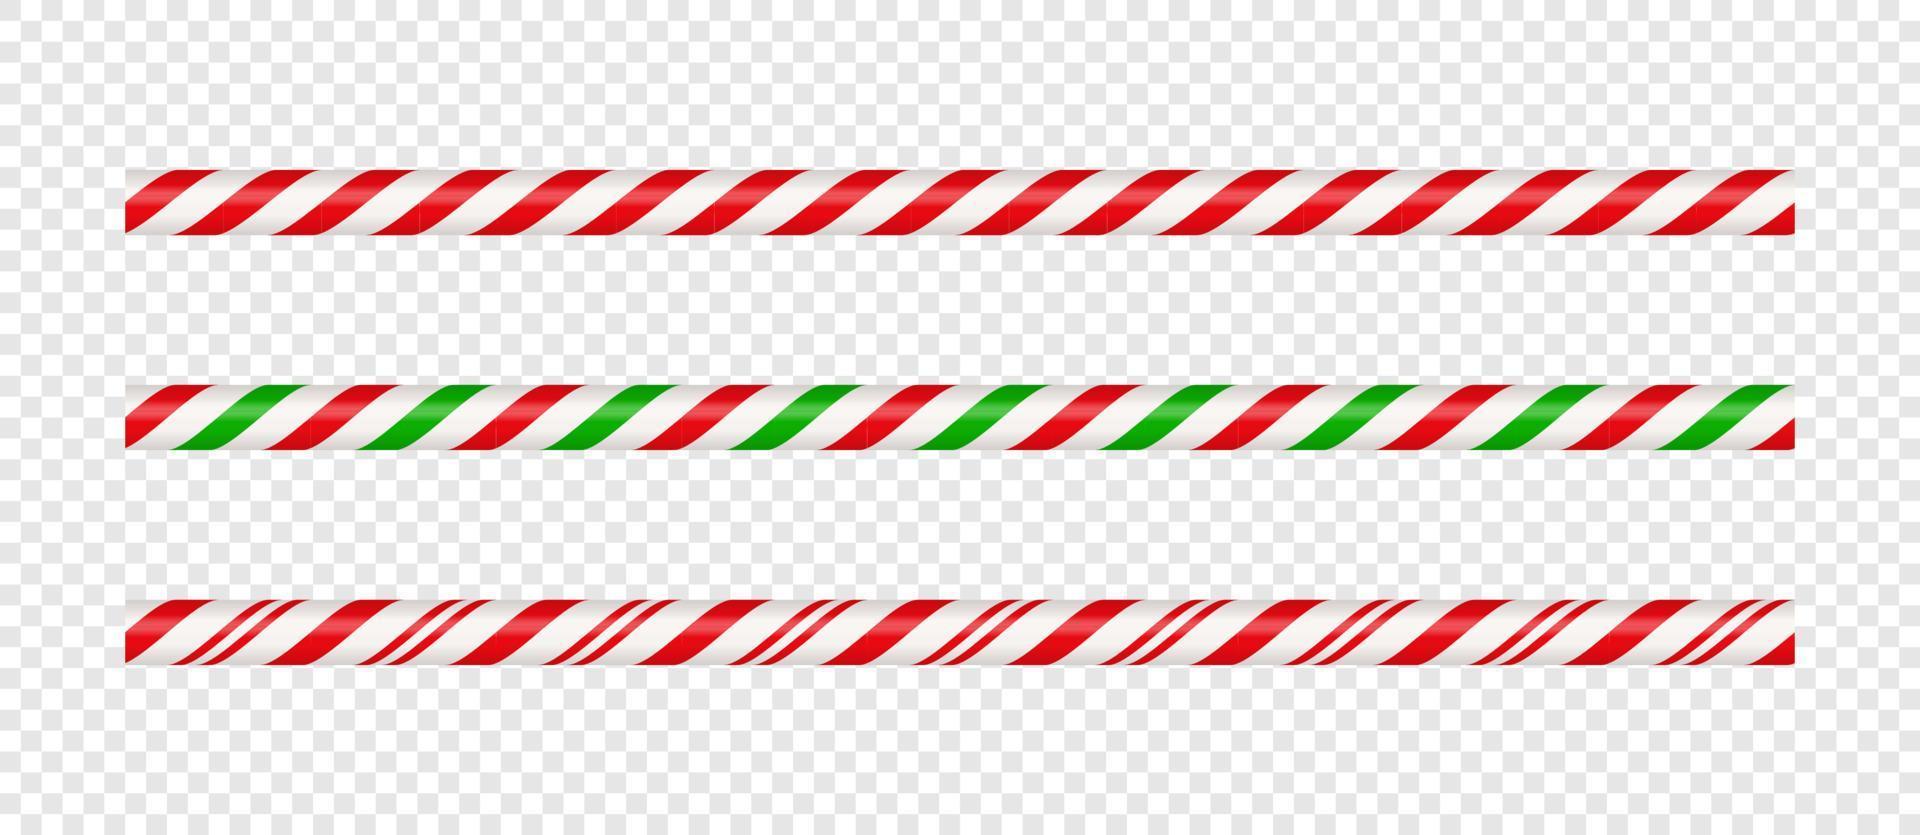 jul godis sockerrör hetero linje gräns med röd och grön randig. xmas sömlös linje med randig godis klubba mönster. jul element. vektor illustration isolerat på vit bakgrund